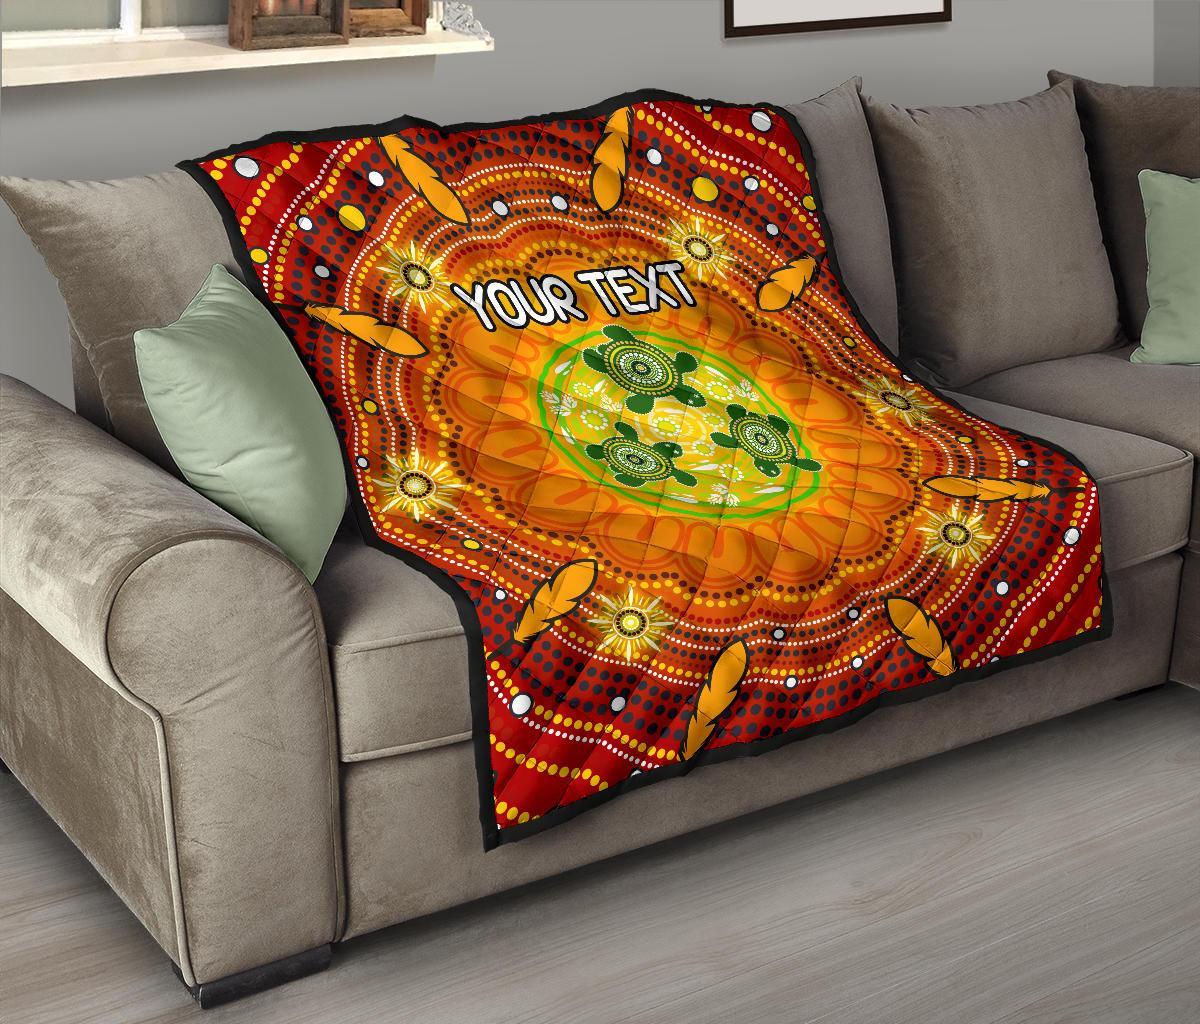 (Custom Text) Aboriginal Premium Quilt - Turtle Circle Dot Painting Art